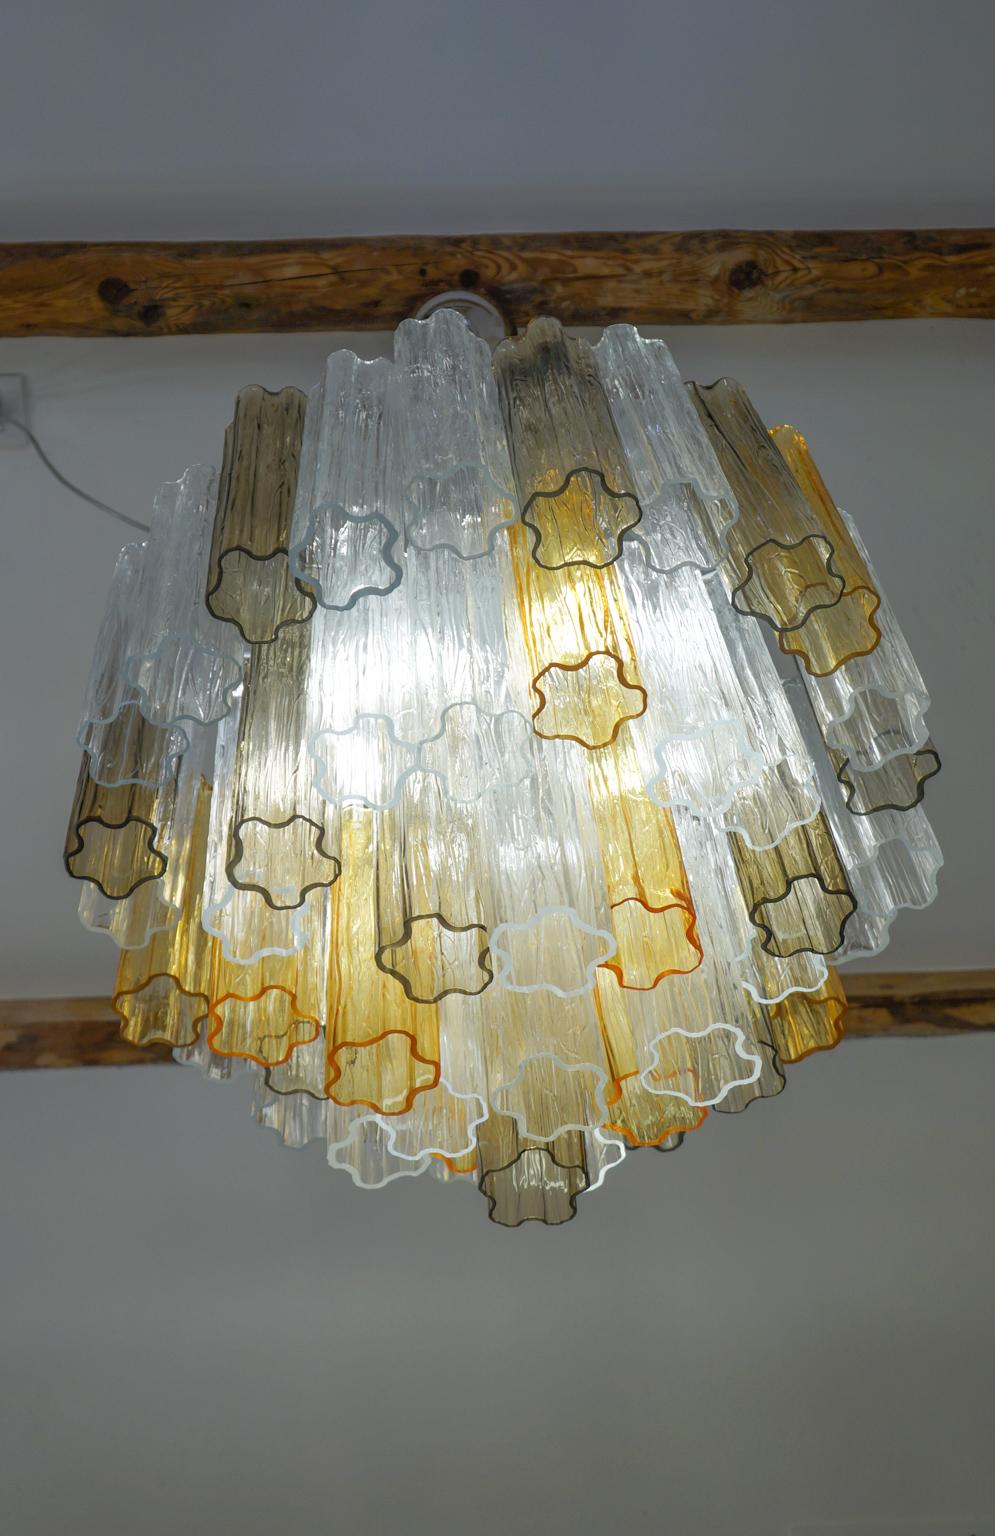 Le lustre que vous voyez sur la photo est un lustre vintage, conçu en 1980 par Kalmar. Elle est composée de 49 éléments appelés troncs de tuyaux et à l'intérieur on trouve 5 ampoules qui créent de merveilleux jeux de lumière reflétant la